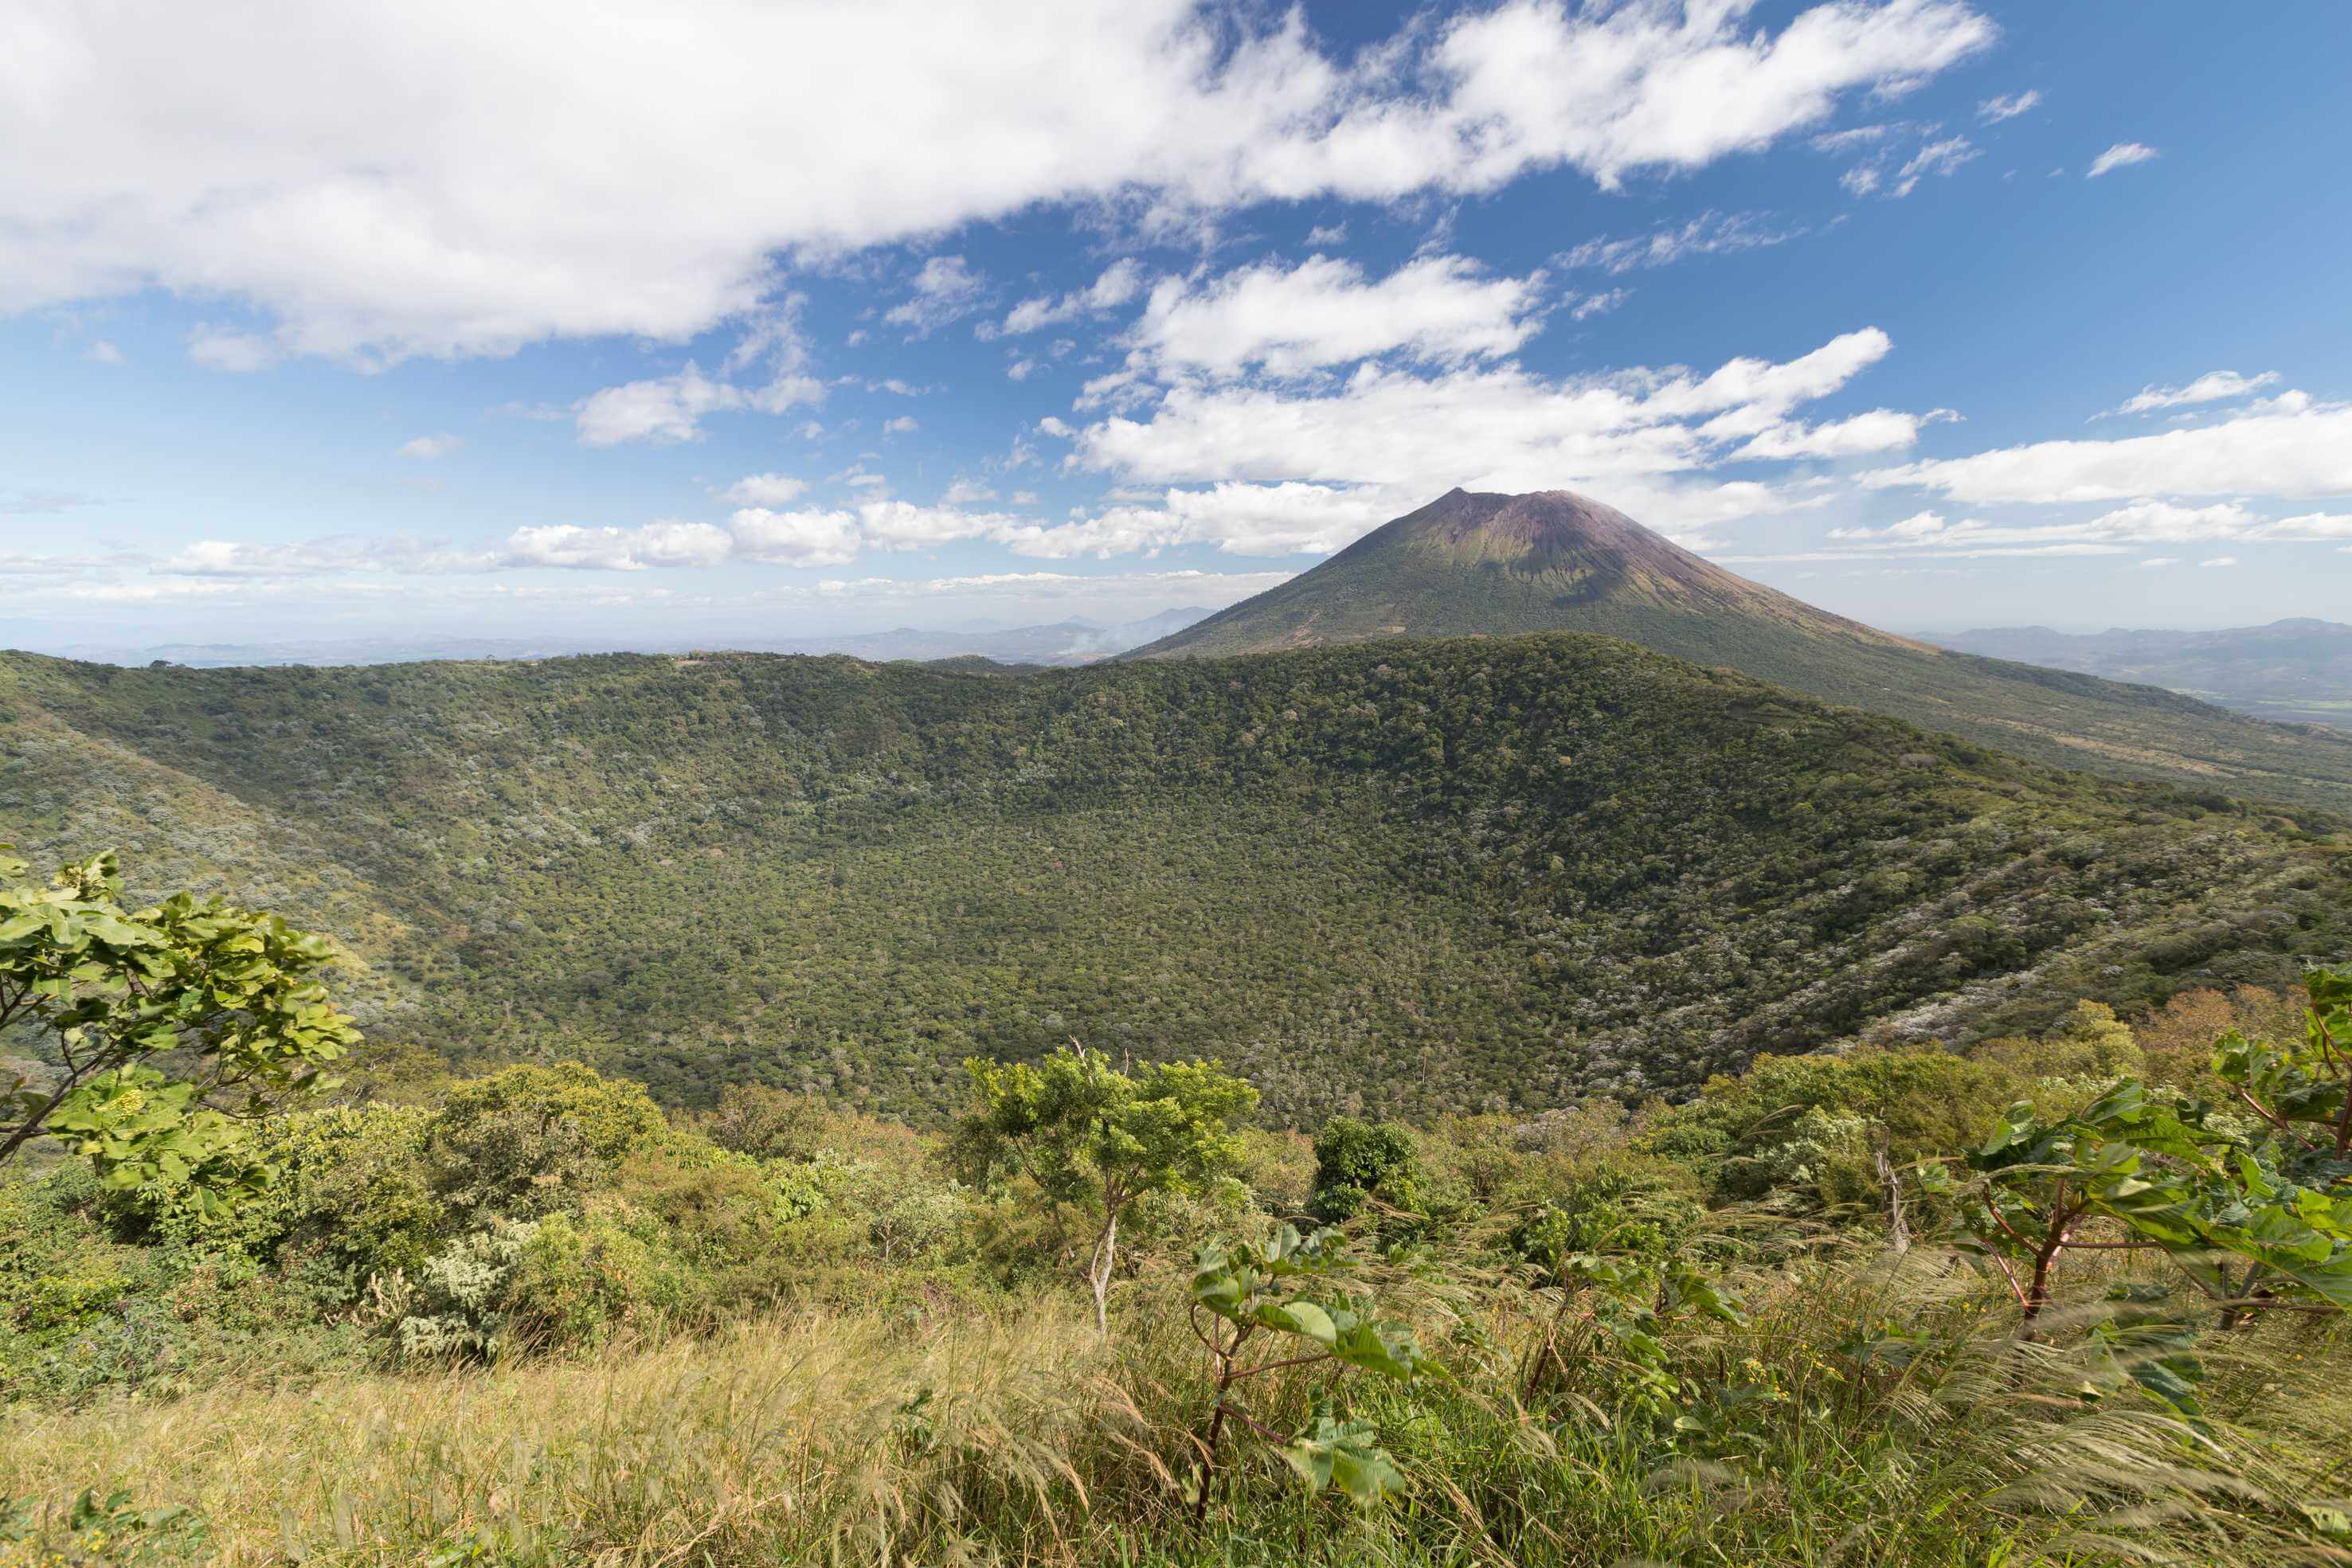 Krater des Vulkans Chinameca im Vordergrund und der Vulkan von San Miguel im Hintergrund.